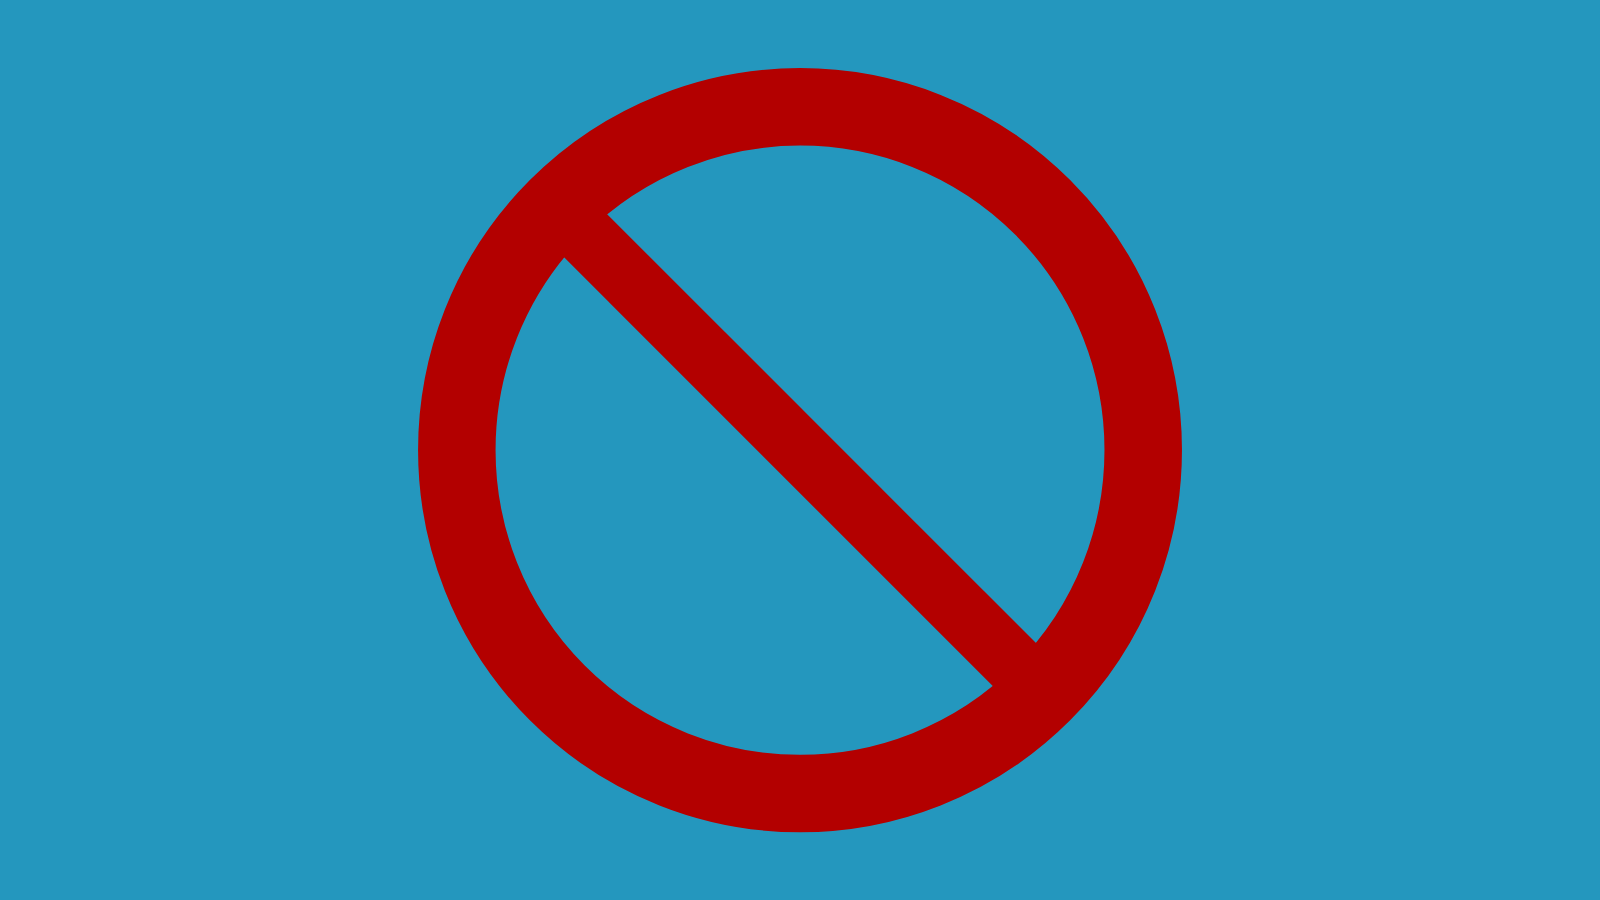 No Sign